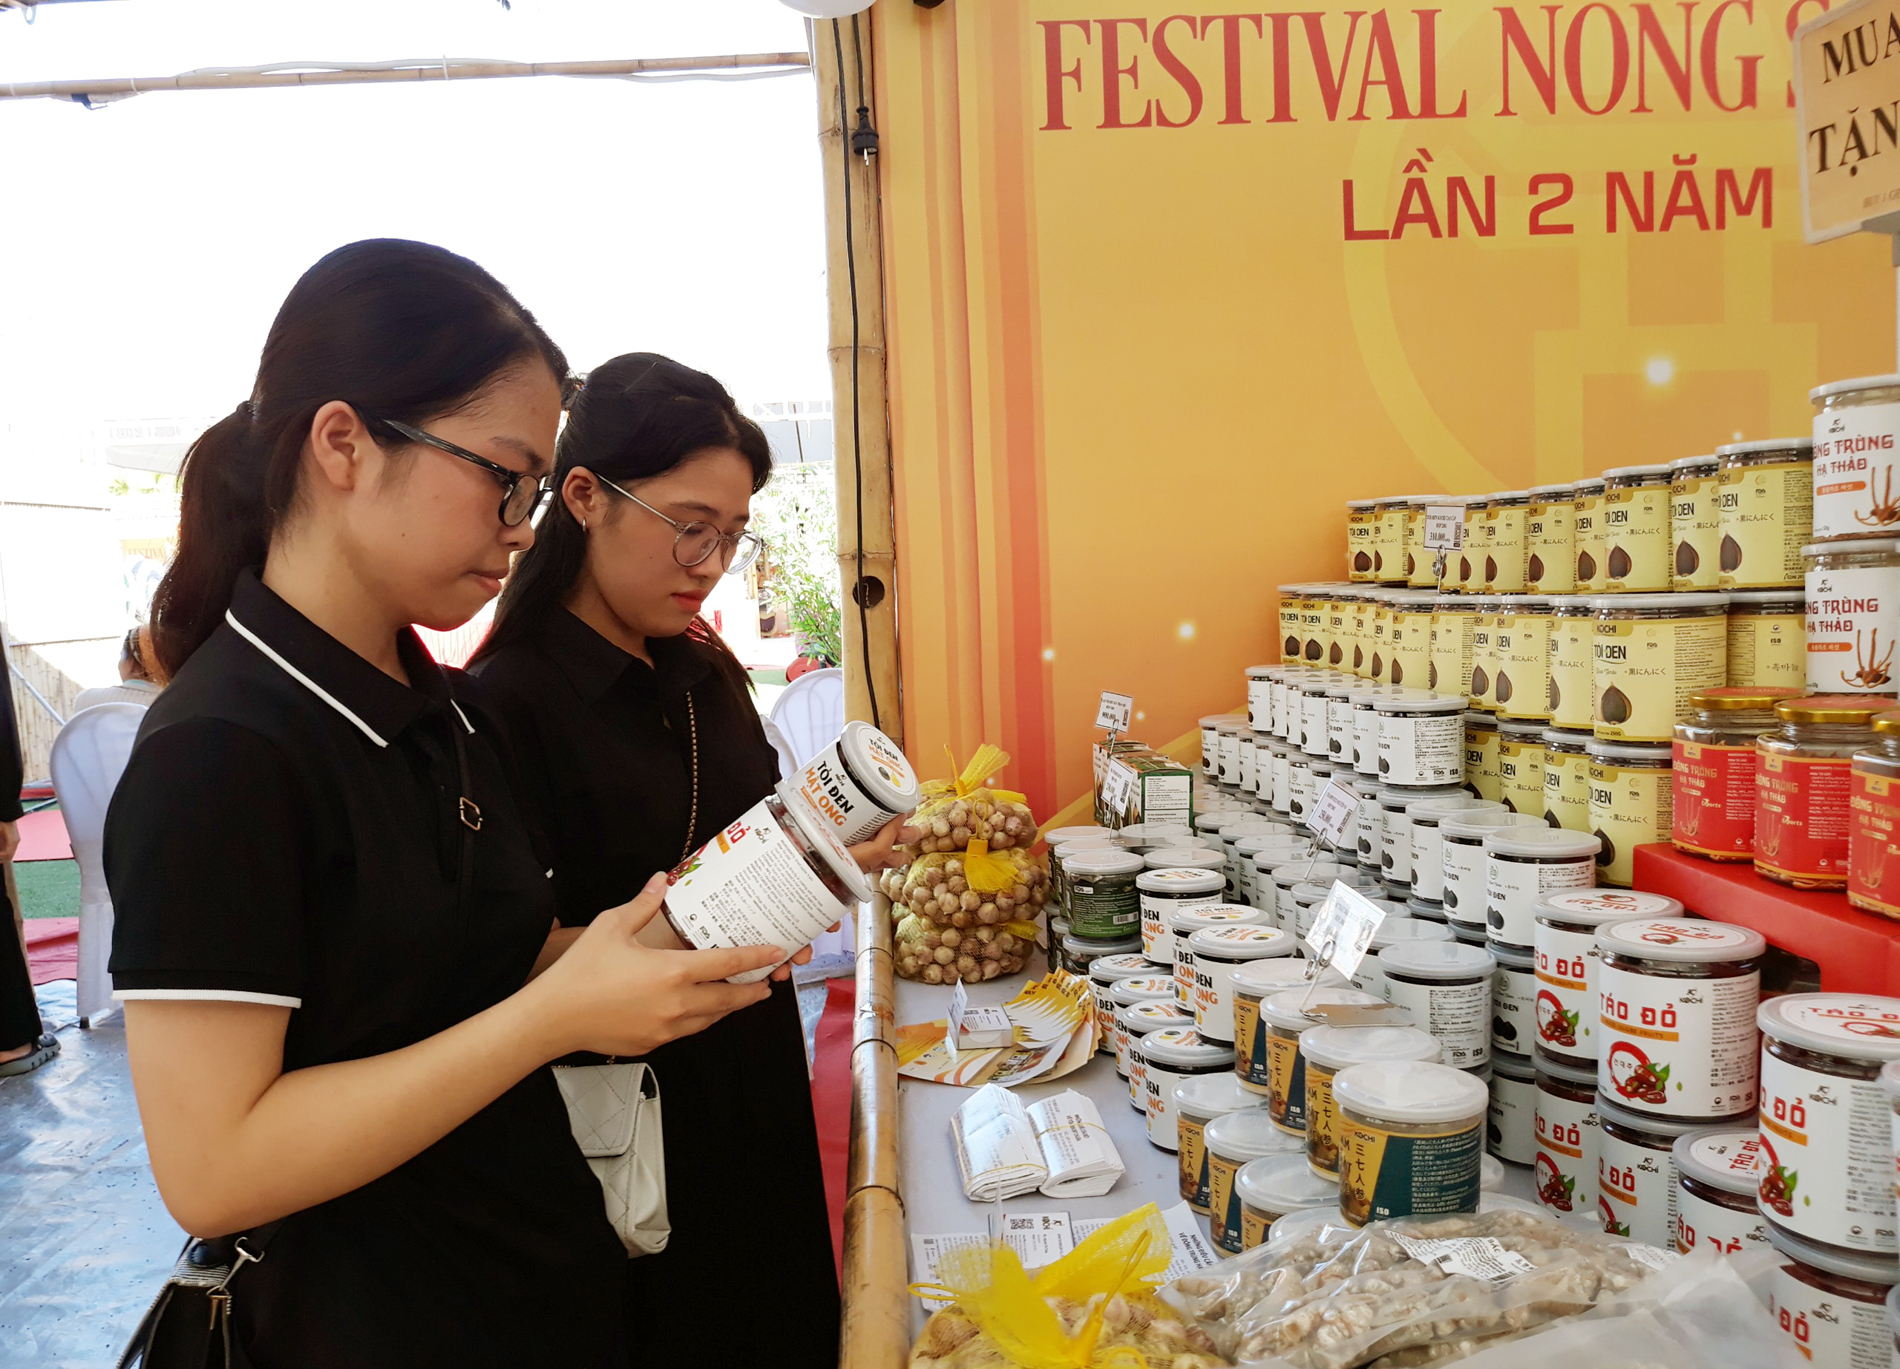 20 tỉnh thành tham gia Festival nông sản Hà Nội lần 2 năm 2023 - Ảnh 1.